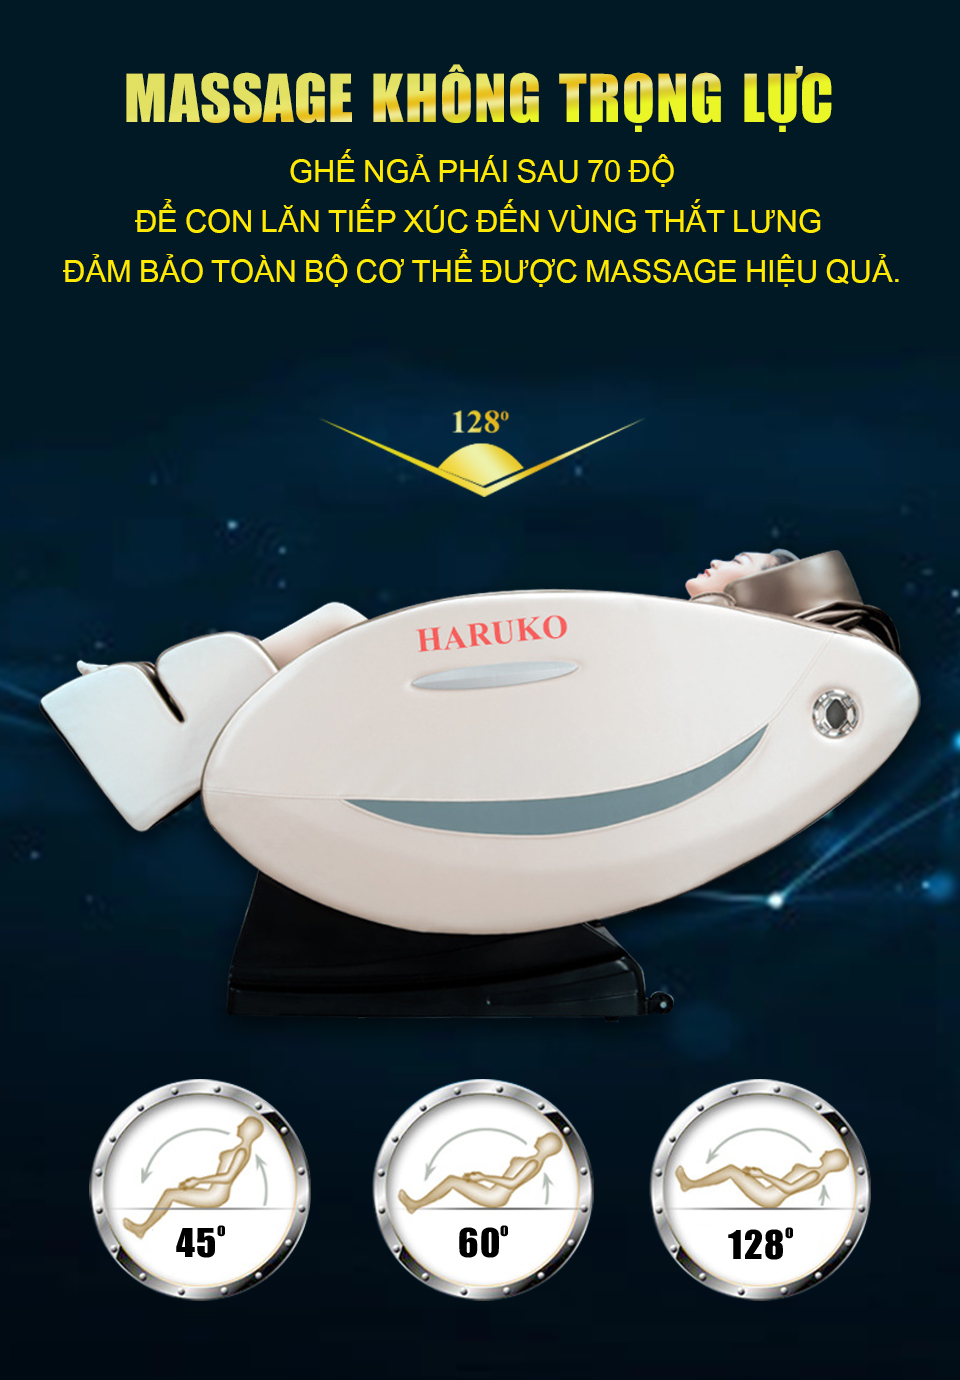 Haruko-H7 với hệ thống massage không trọng lực sẽ giảm bớt đau lưng cho bà bầu